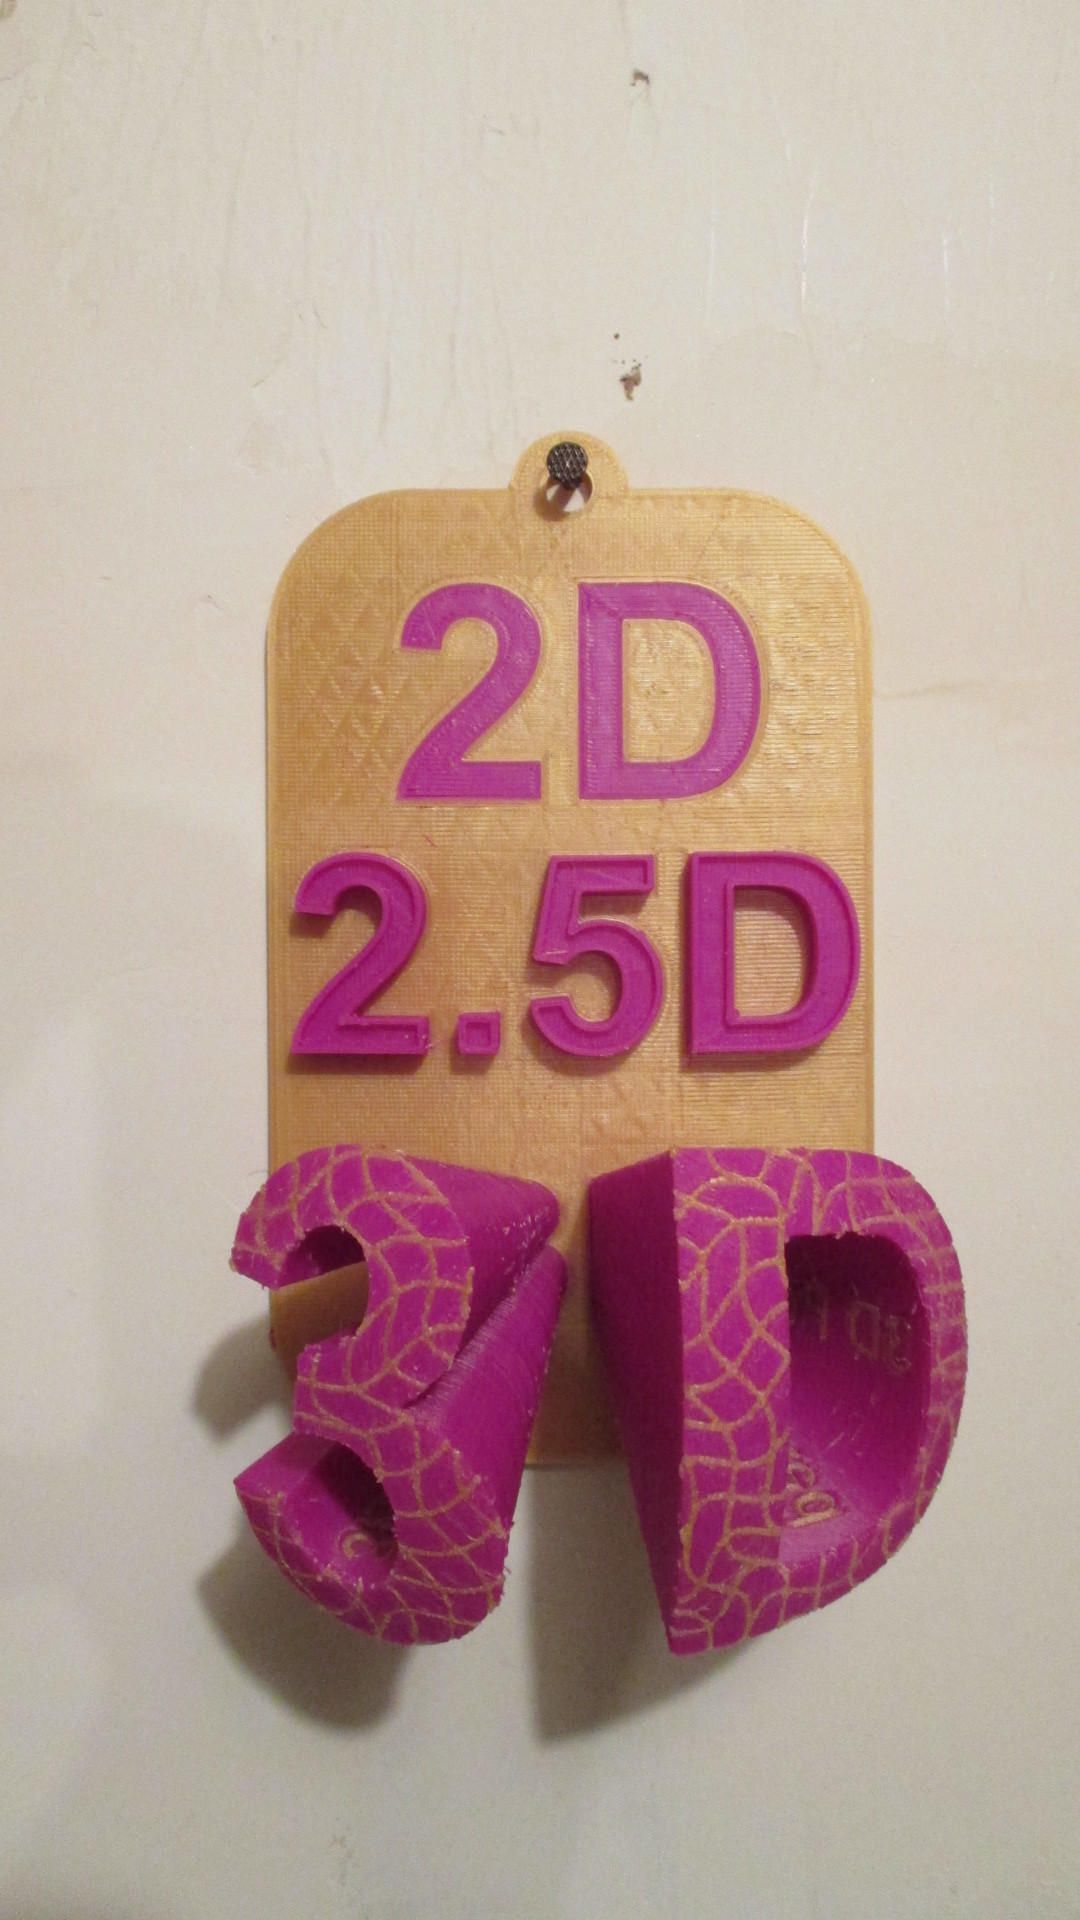 3d Printed 2d 2 5d 3d Dualstrusion By 3dcrazy Pinshape